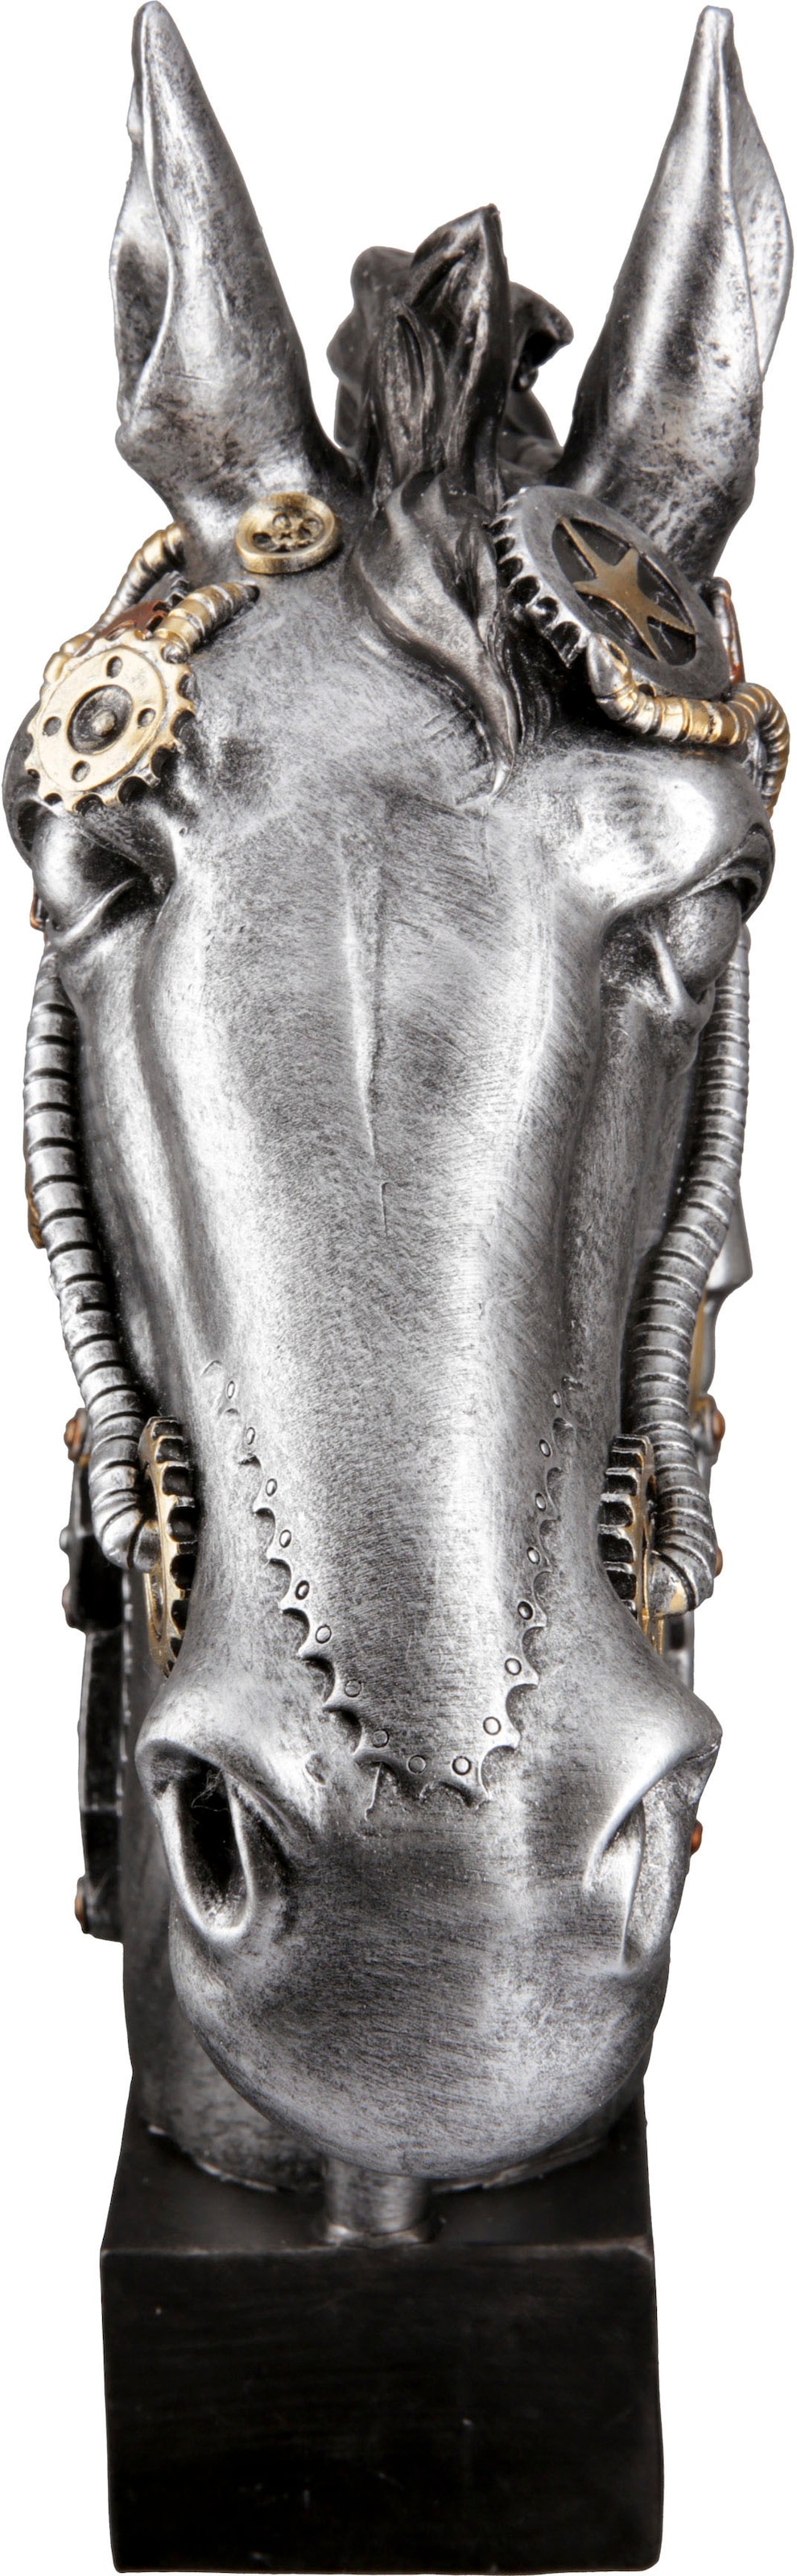 ♕ Casablanca by Gilde Tierfigur bestellen »Skulptur Steampunk Horse« versandkostenfrei